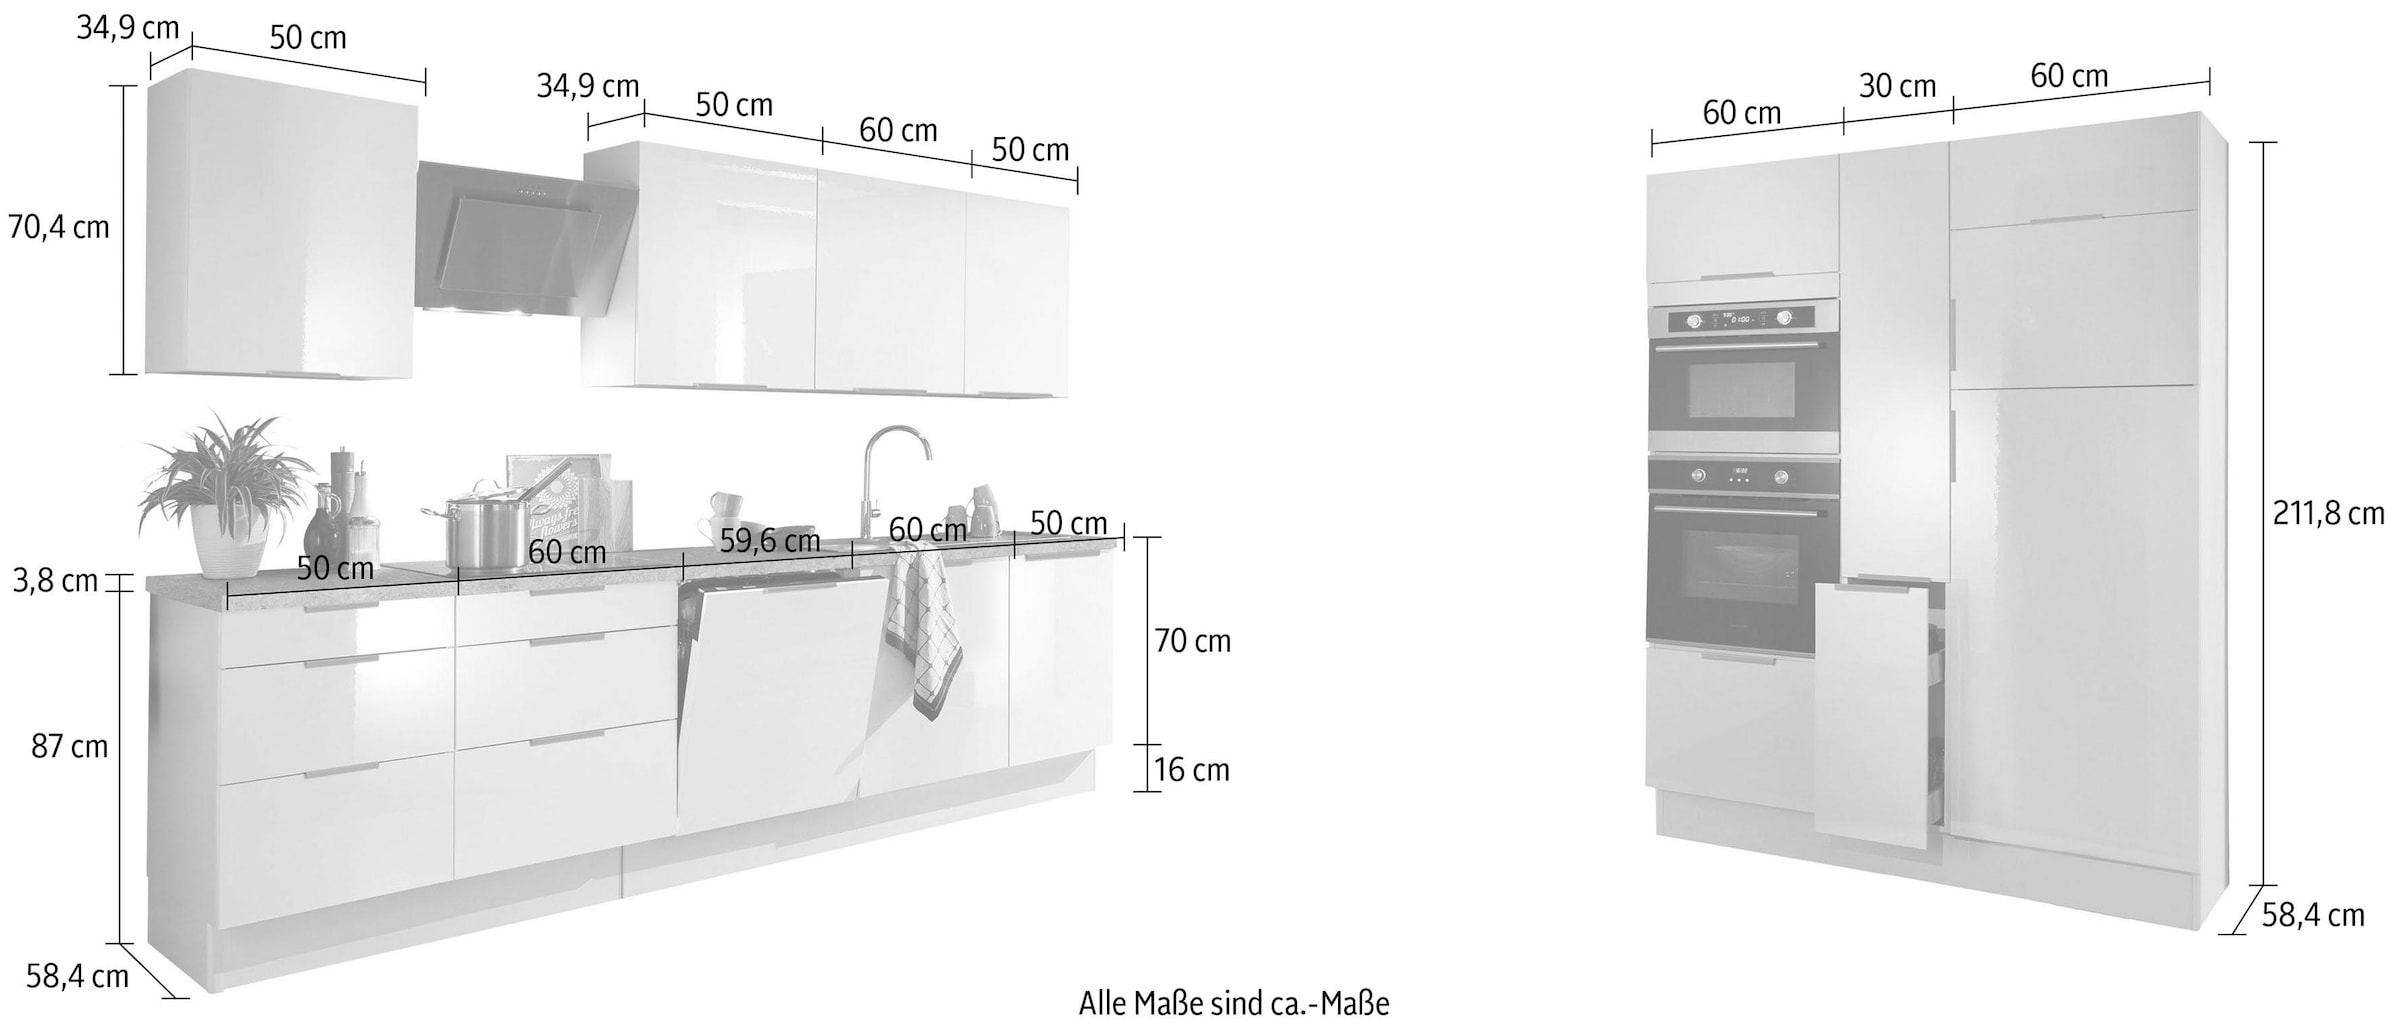 OPTIFIT Küchenzeile »Tara«, ohne E-Geräte, mit Vollauszug und Soft-Close-Funktion, Breite 430 cm